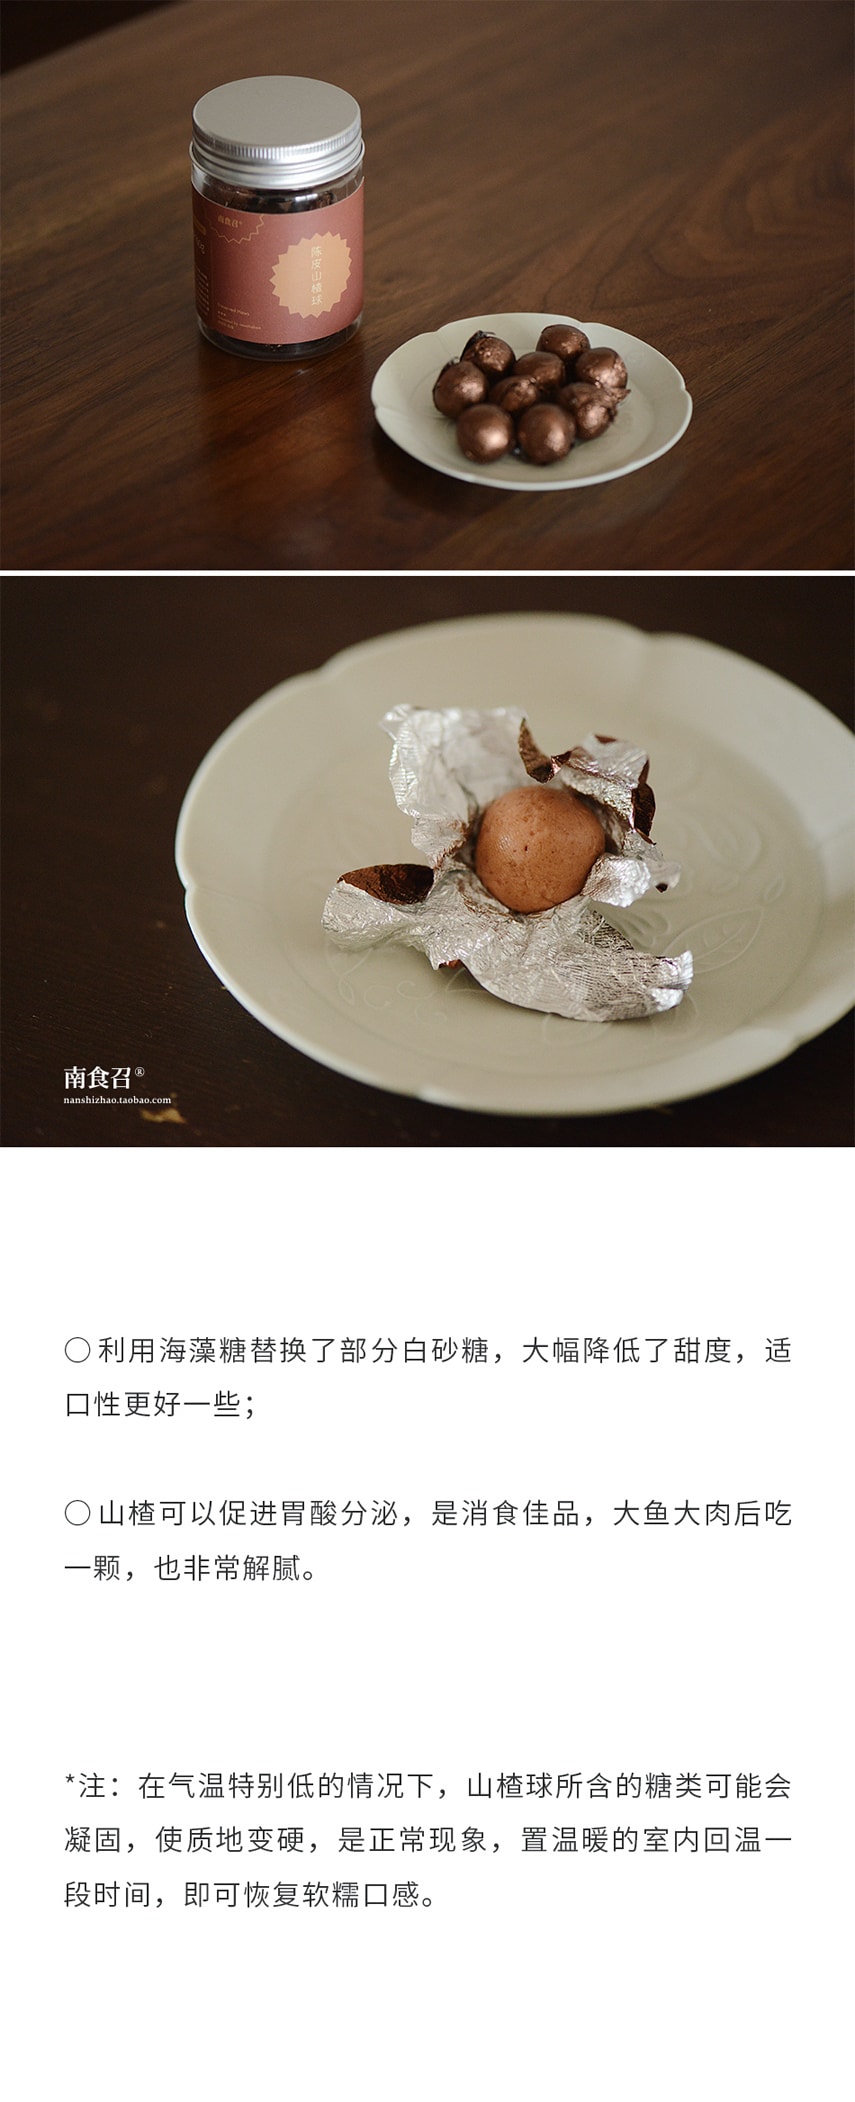 【健康小零食】老陈皮山楂球 135克 鲜果制作 软糯口感 不裹糖 南食召品牌